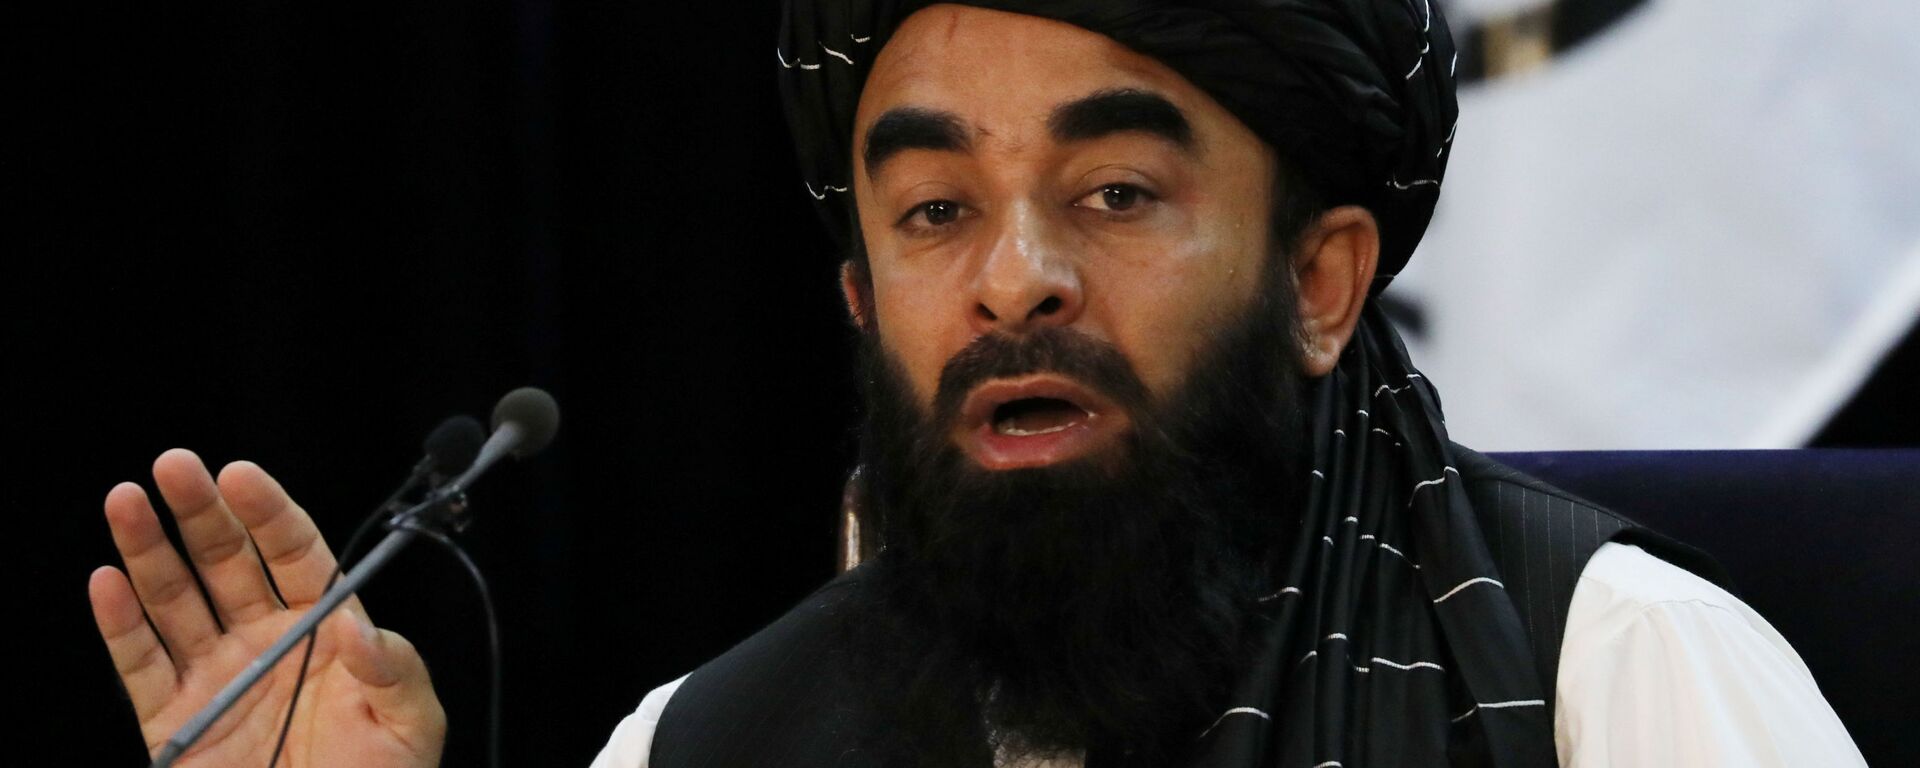 ممثل حركة طالبان (المحظورة في روسيا) ذبيح الله مجاهد في كابول، أفغانستان 6 سبتمبر 2021 - سبوتنيك عربي, 1920, 29.12.2021